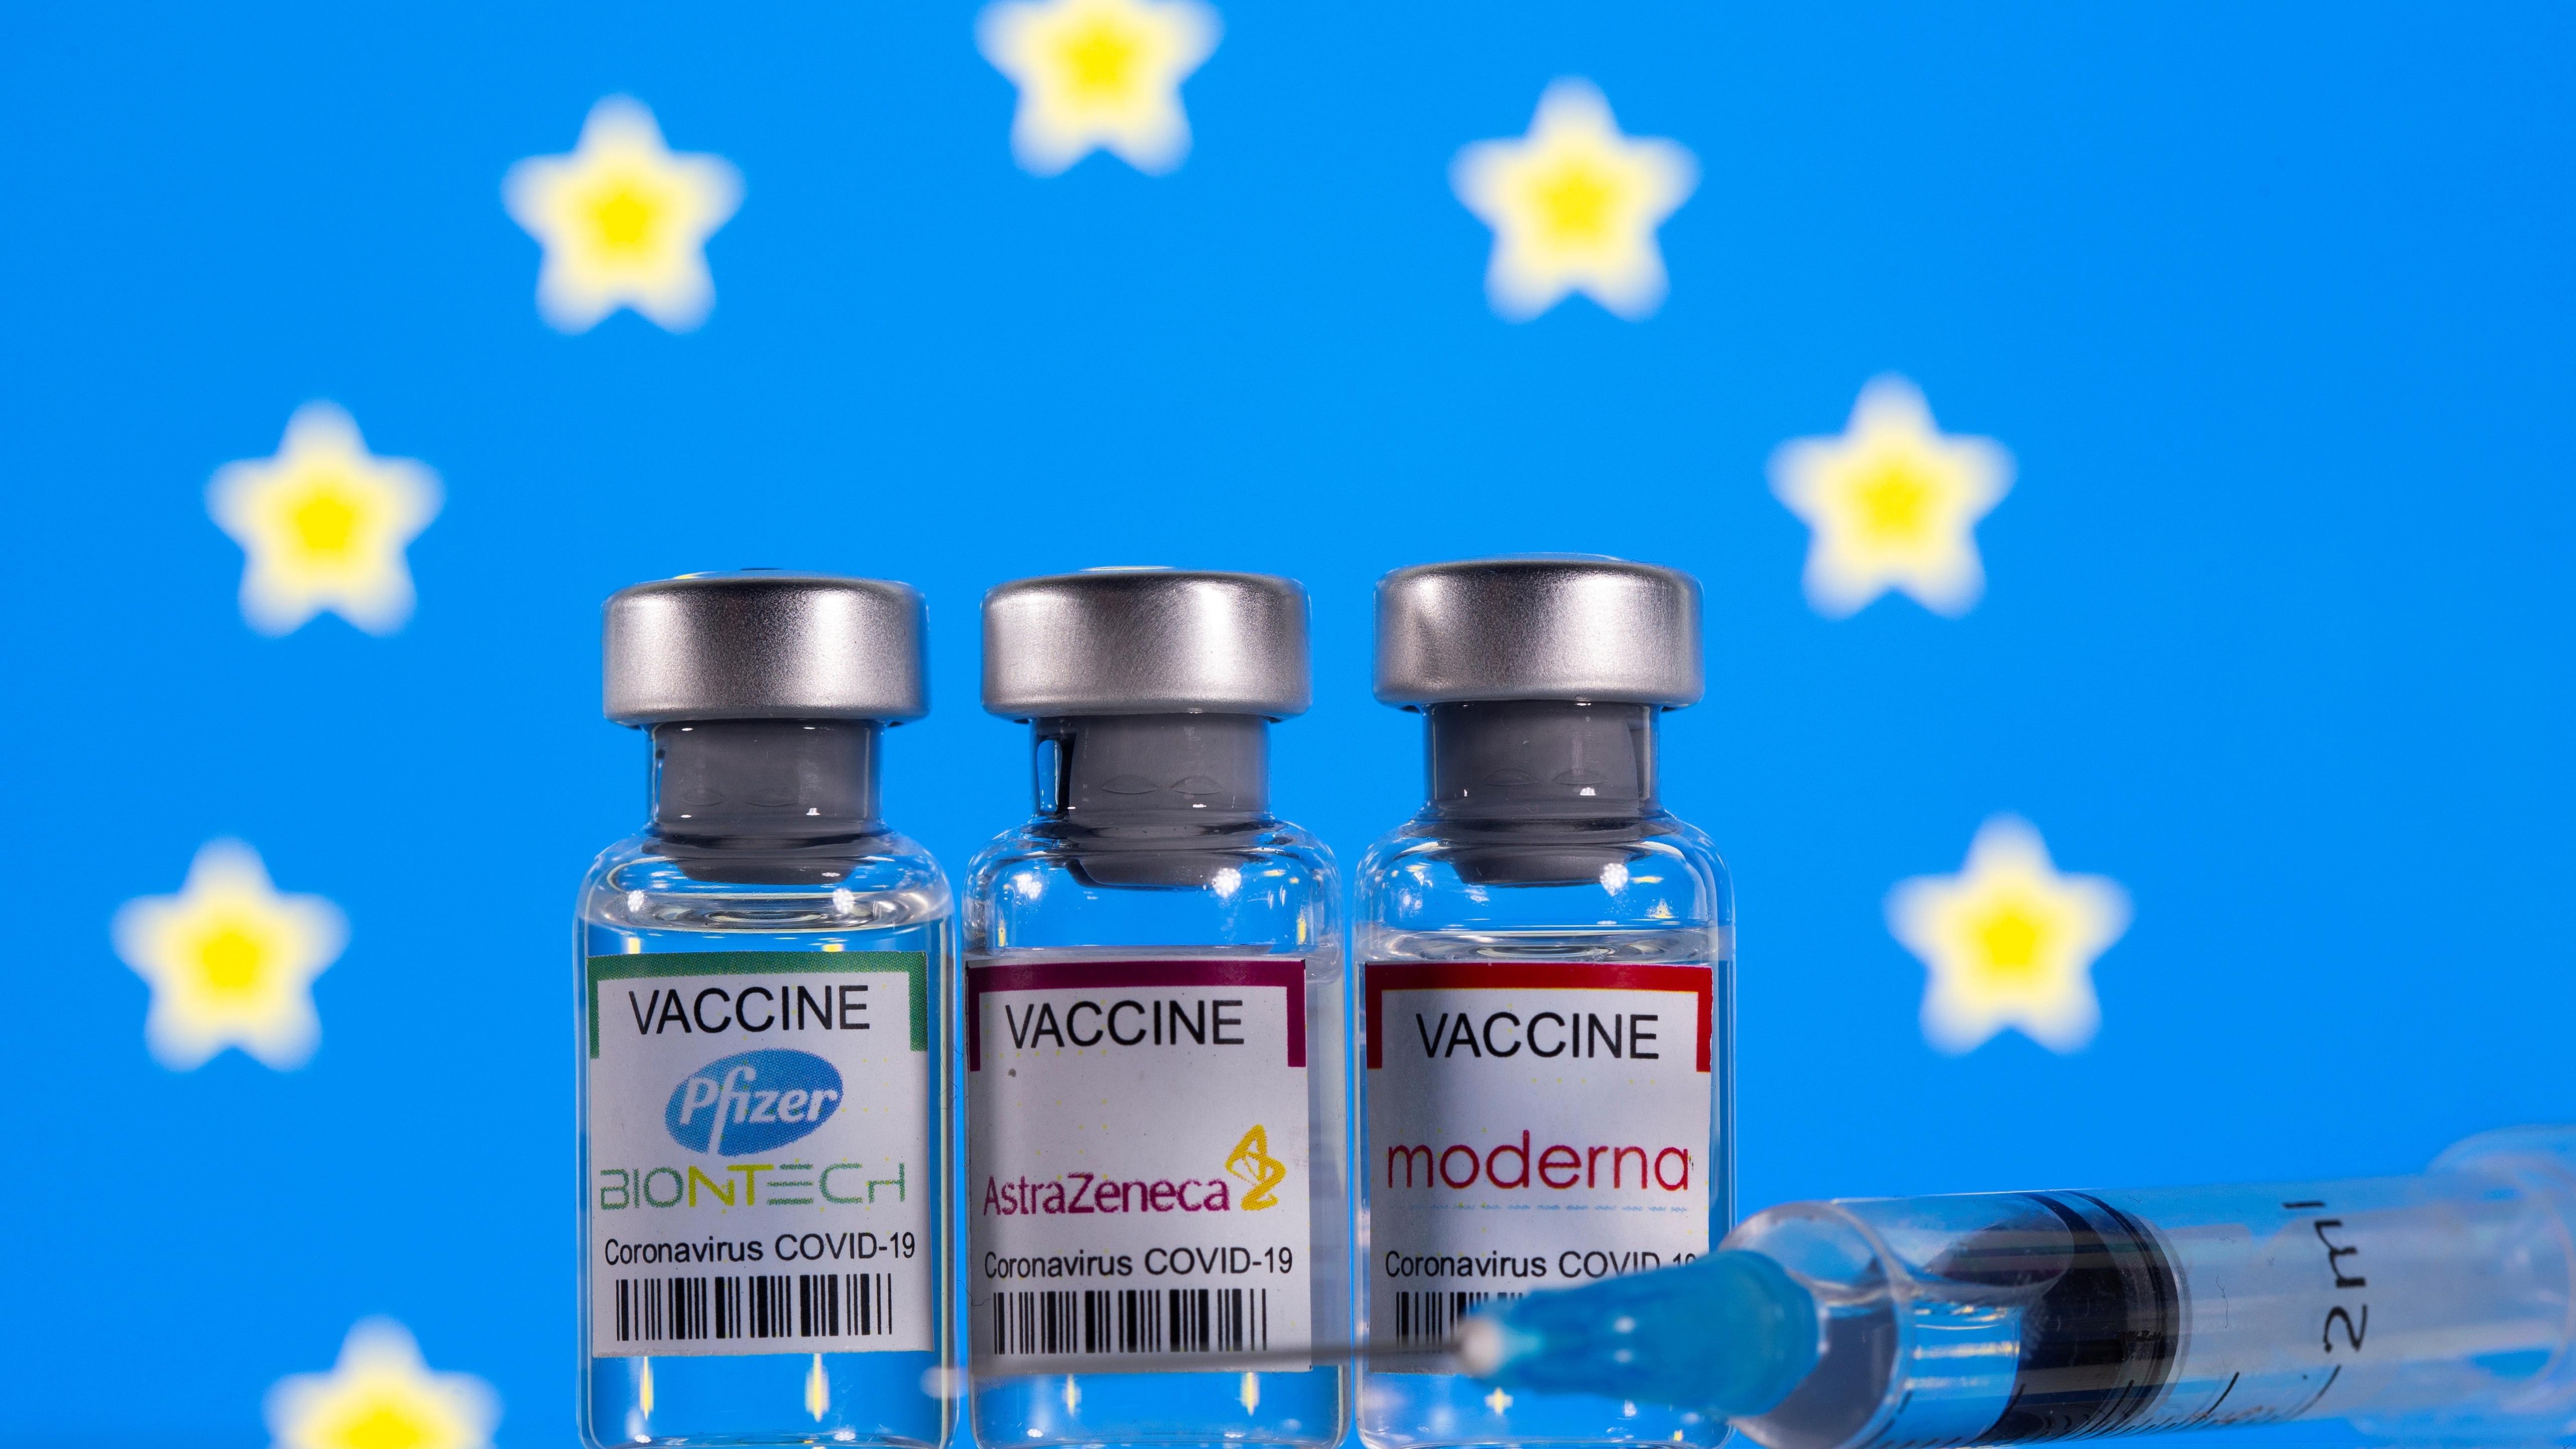 Viales con etiquetas de vacunas contra el coronavirus (COVID-19) de Pfizer-BioNTech, AstraZeneca y Moderna con una bandera de la UE.